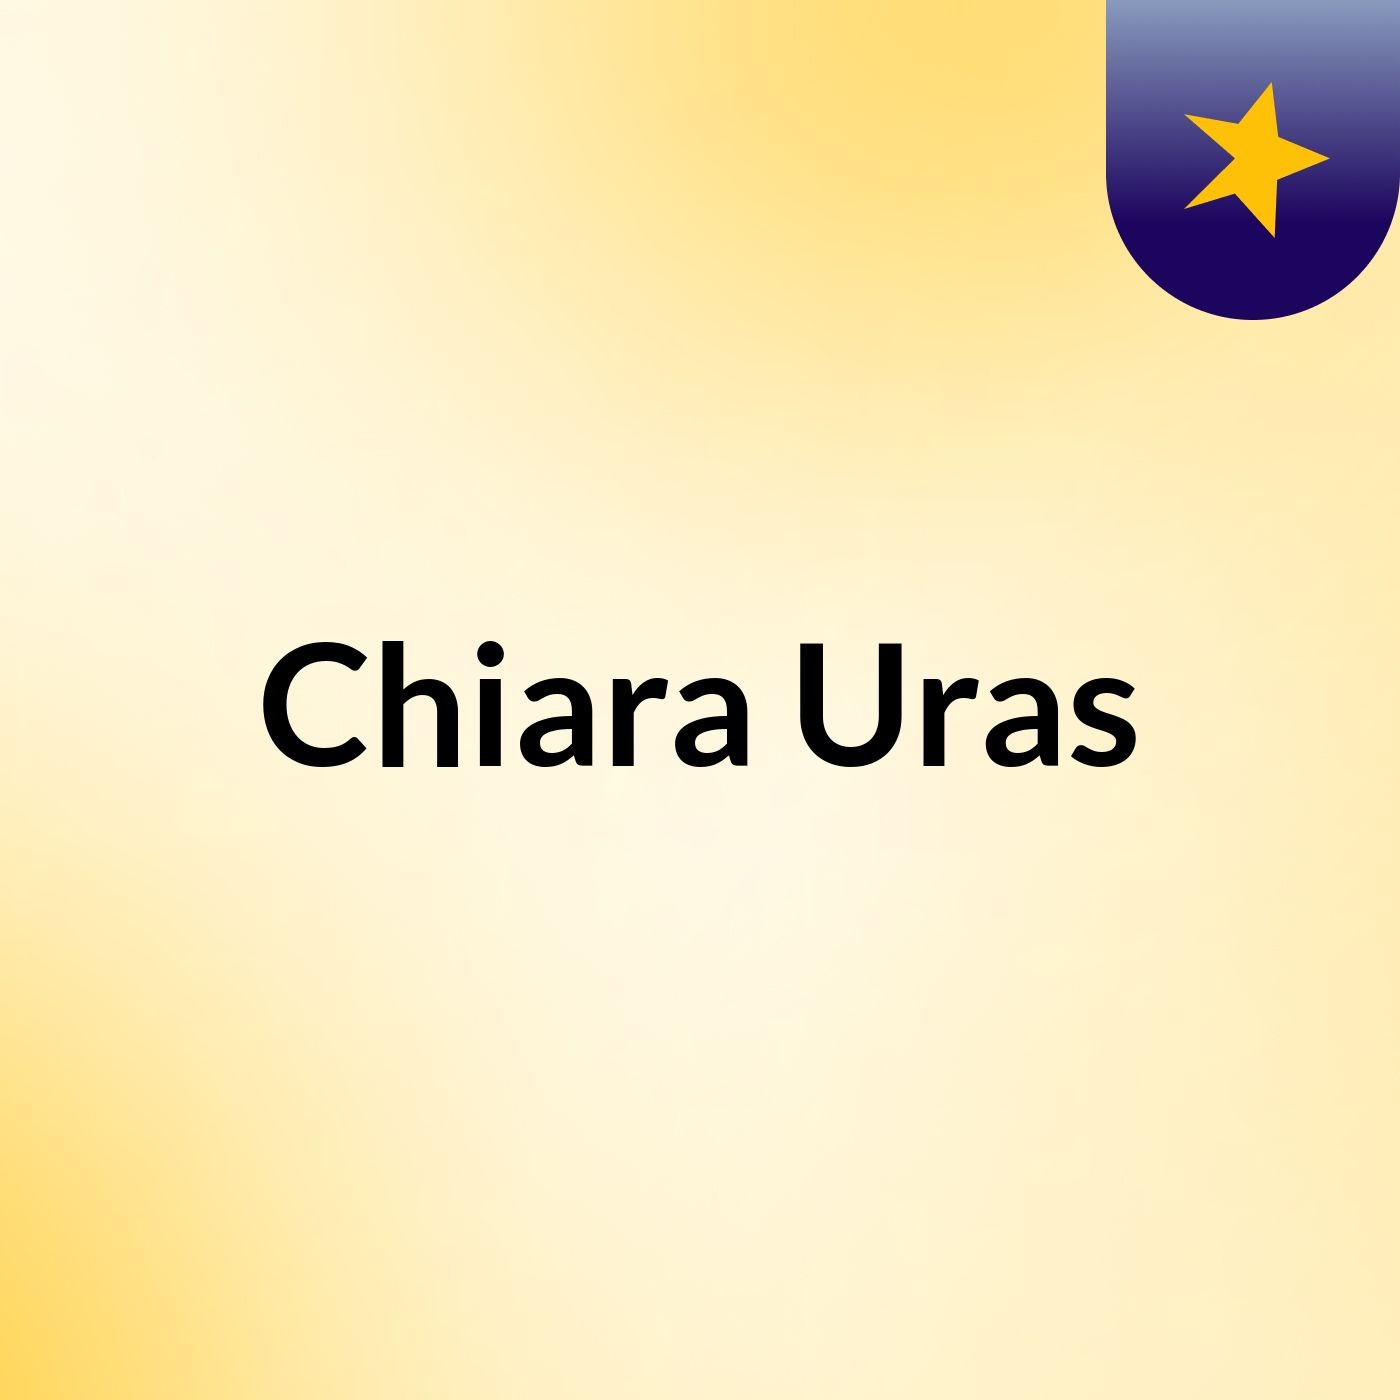 Chiara Uras